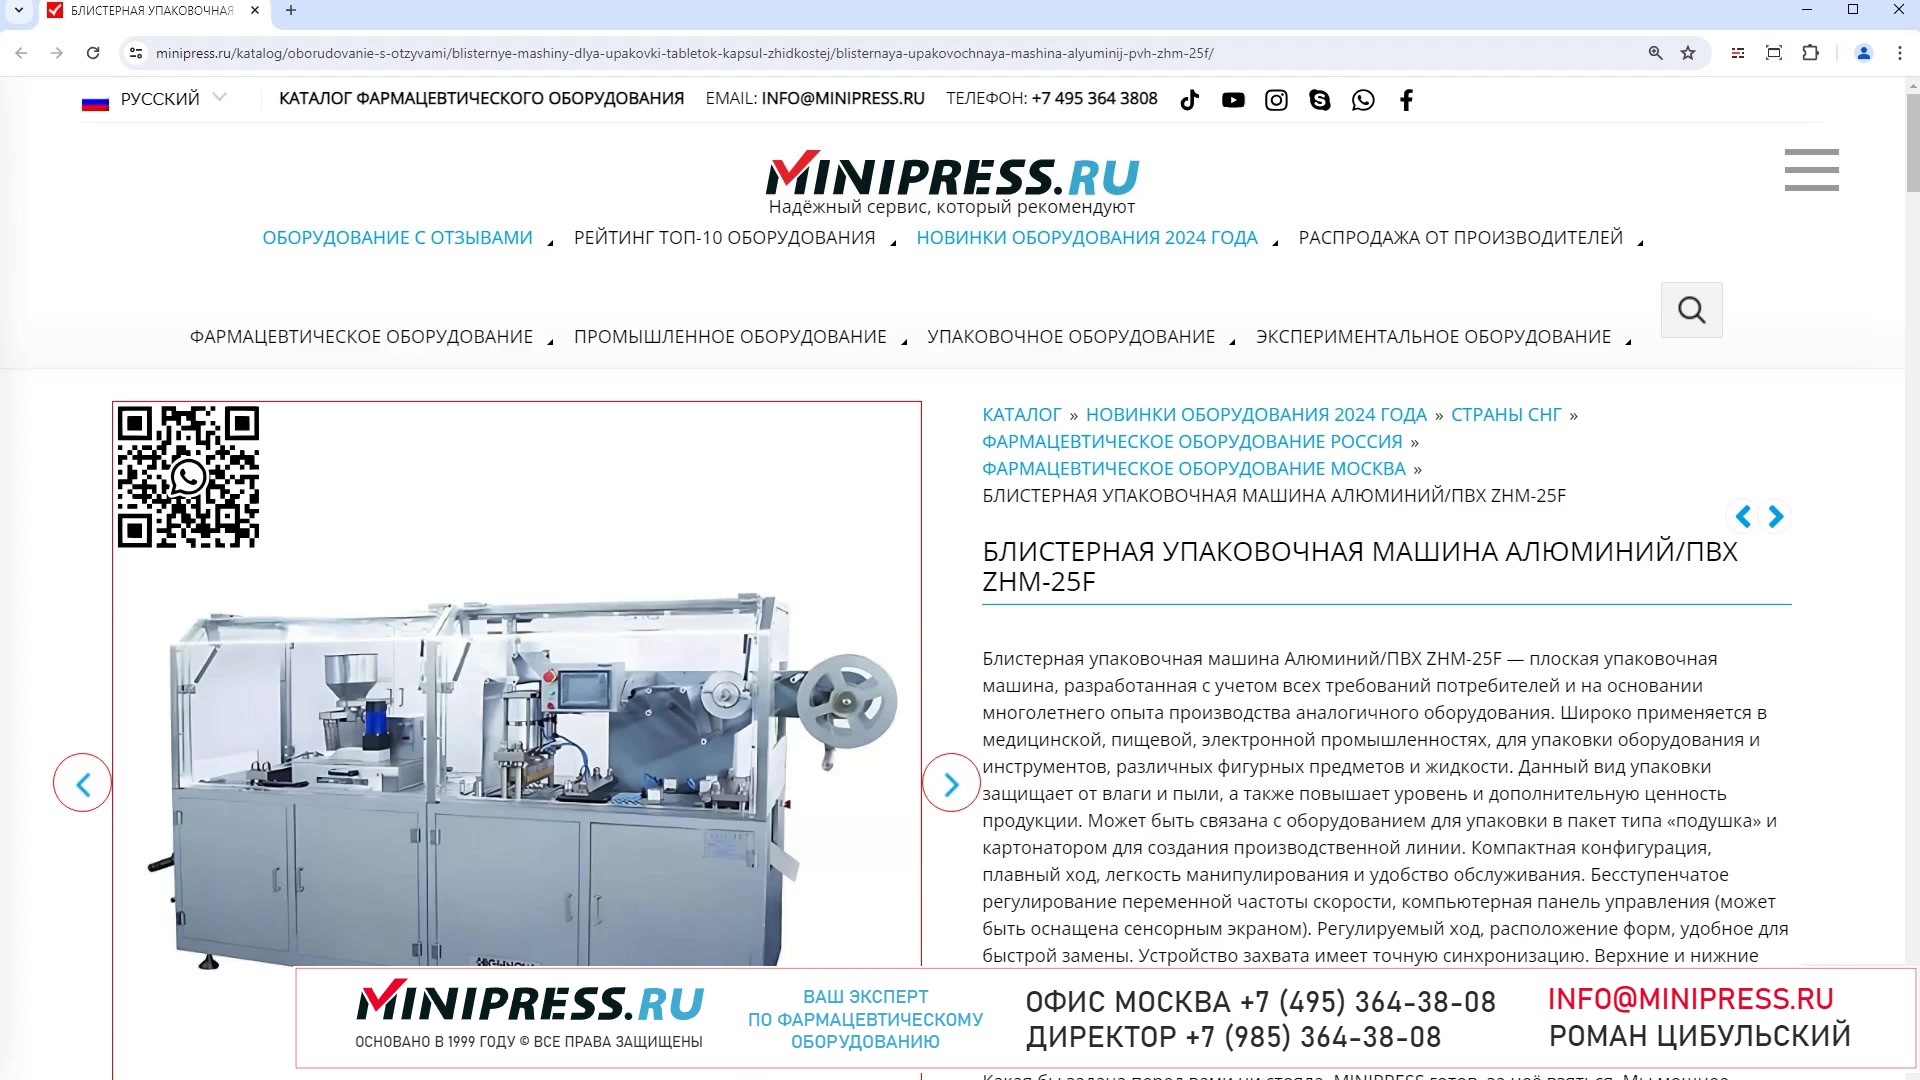 Minipress.ru Блистерная упаковочная машина АлюминийПВХ ZHM-25F